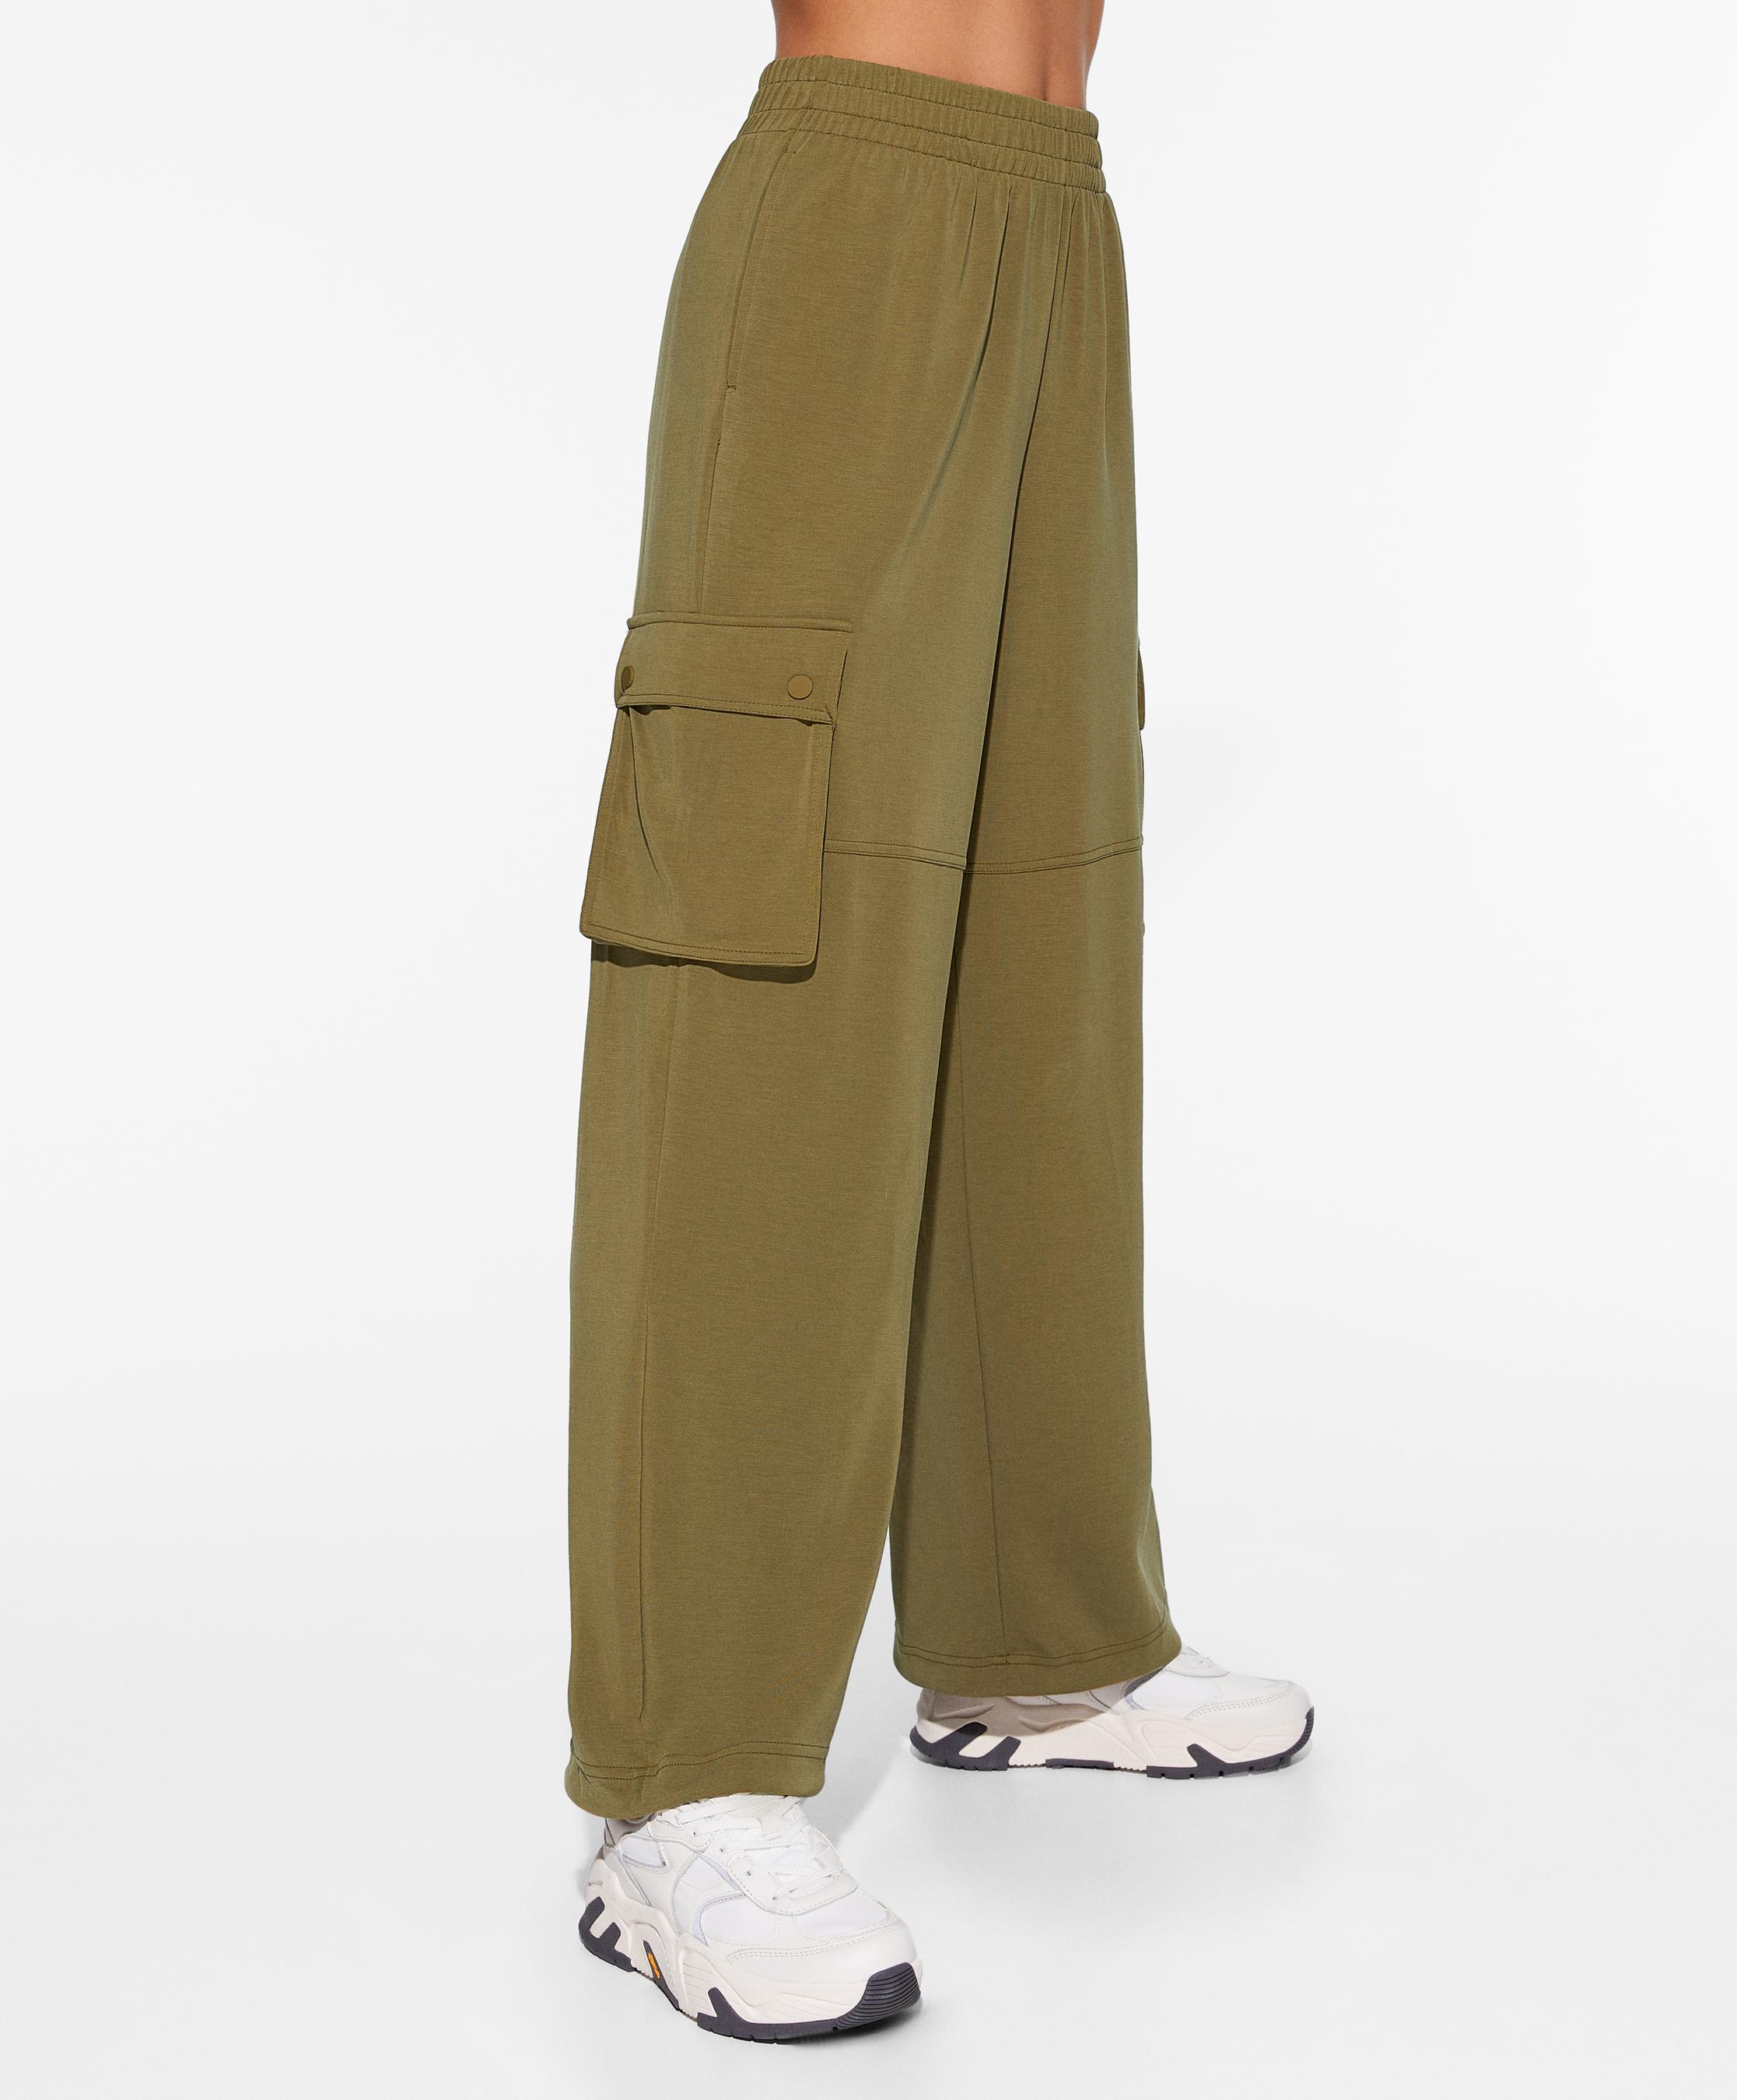 Pantalon cargo avec modal offre à 49,99€ sur Oysho